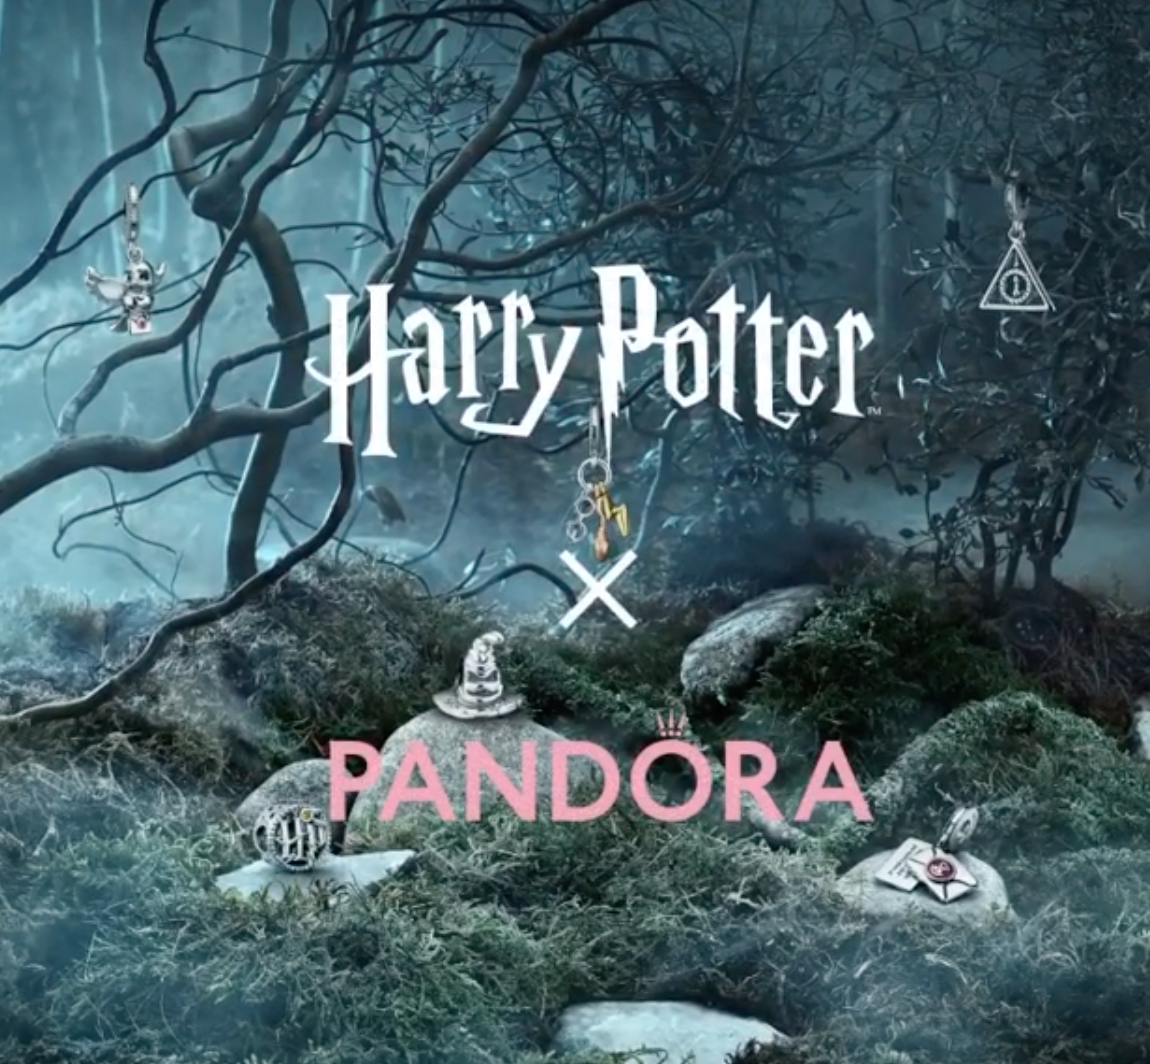 Pandora x Harry Potter 2020 Collection - The Art of Pandora